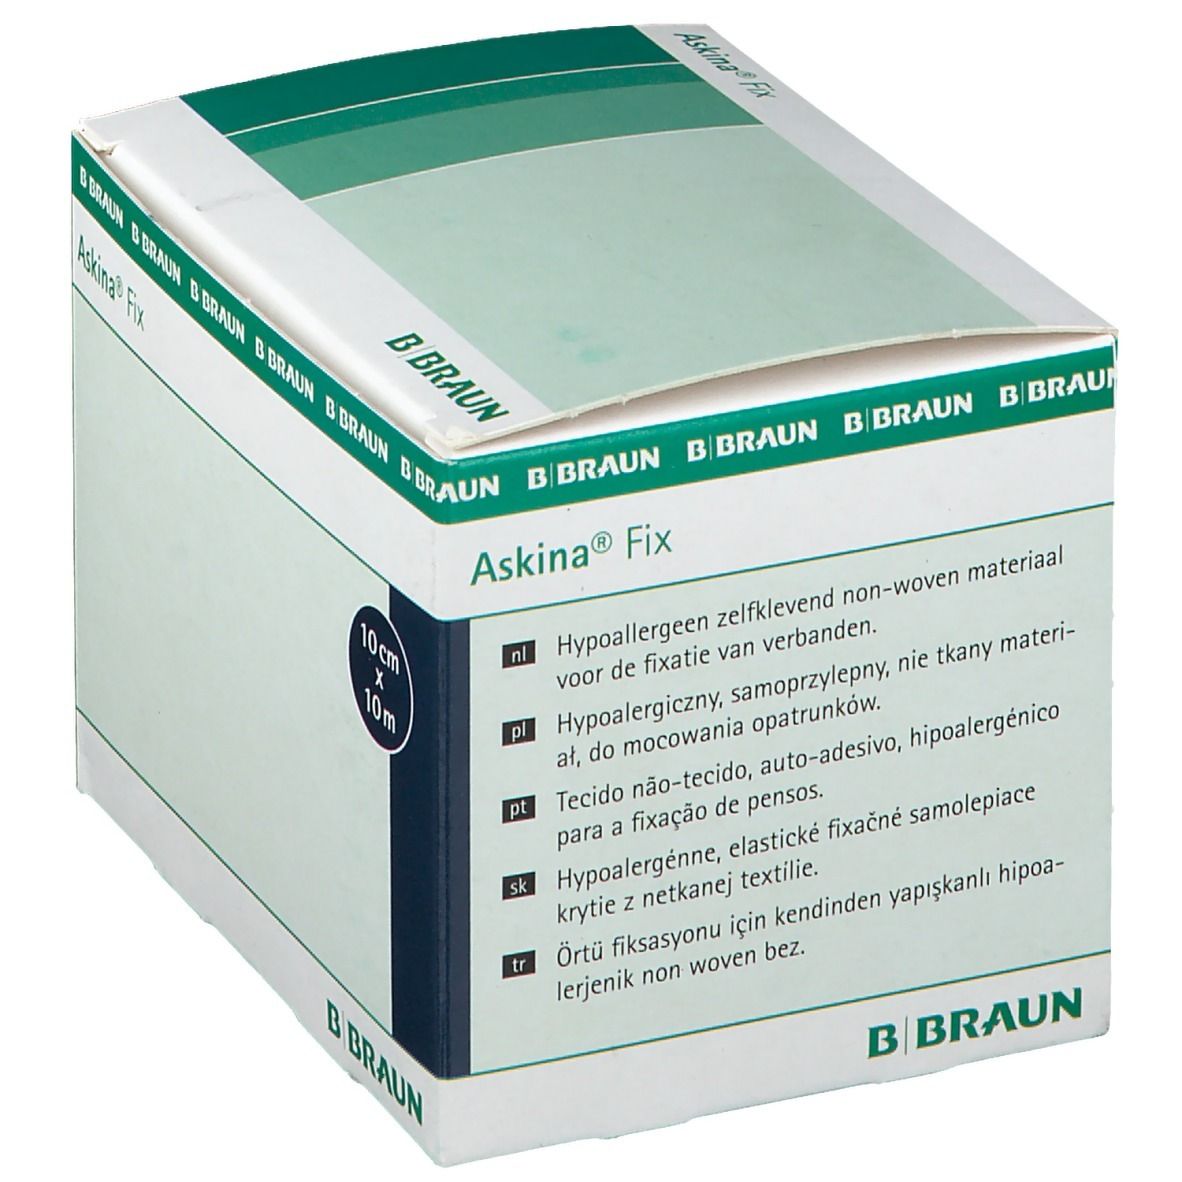 Askina® Fix Fixiervlies 10mx10cm hypoallergen